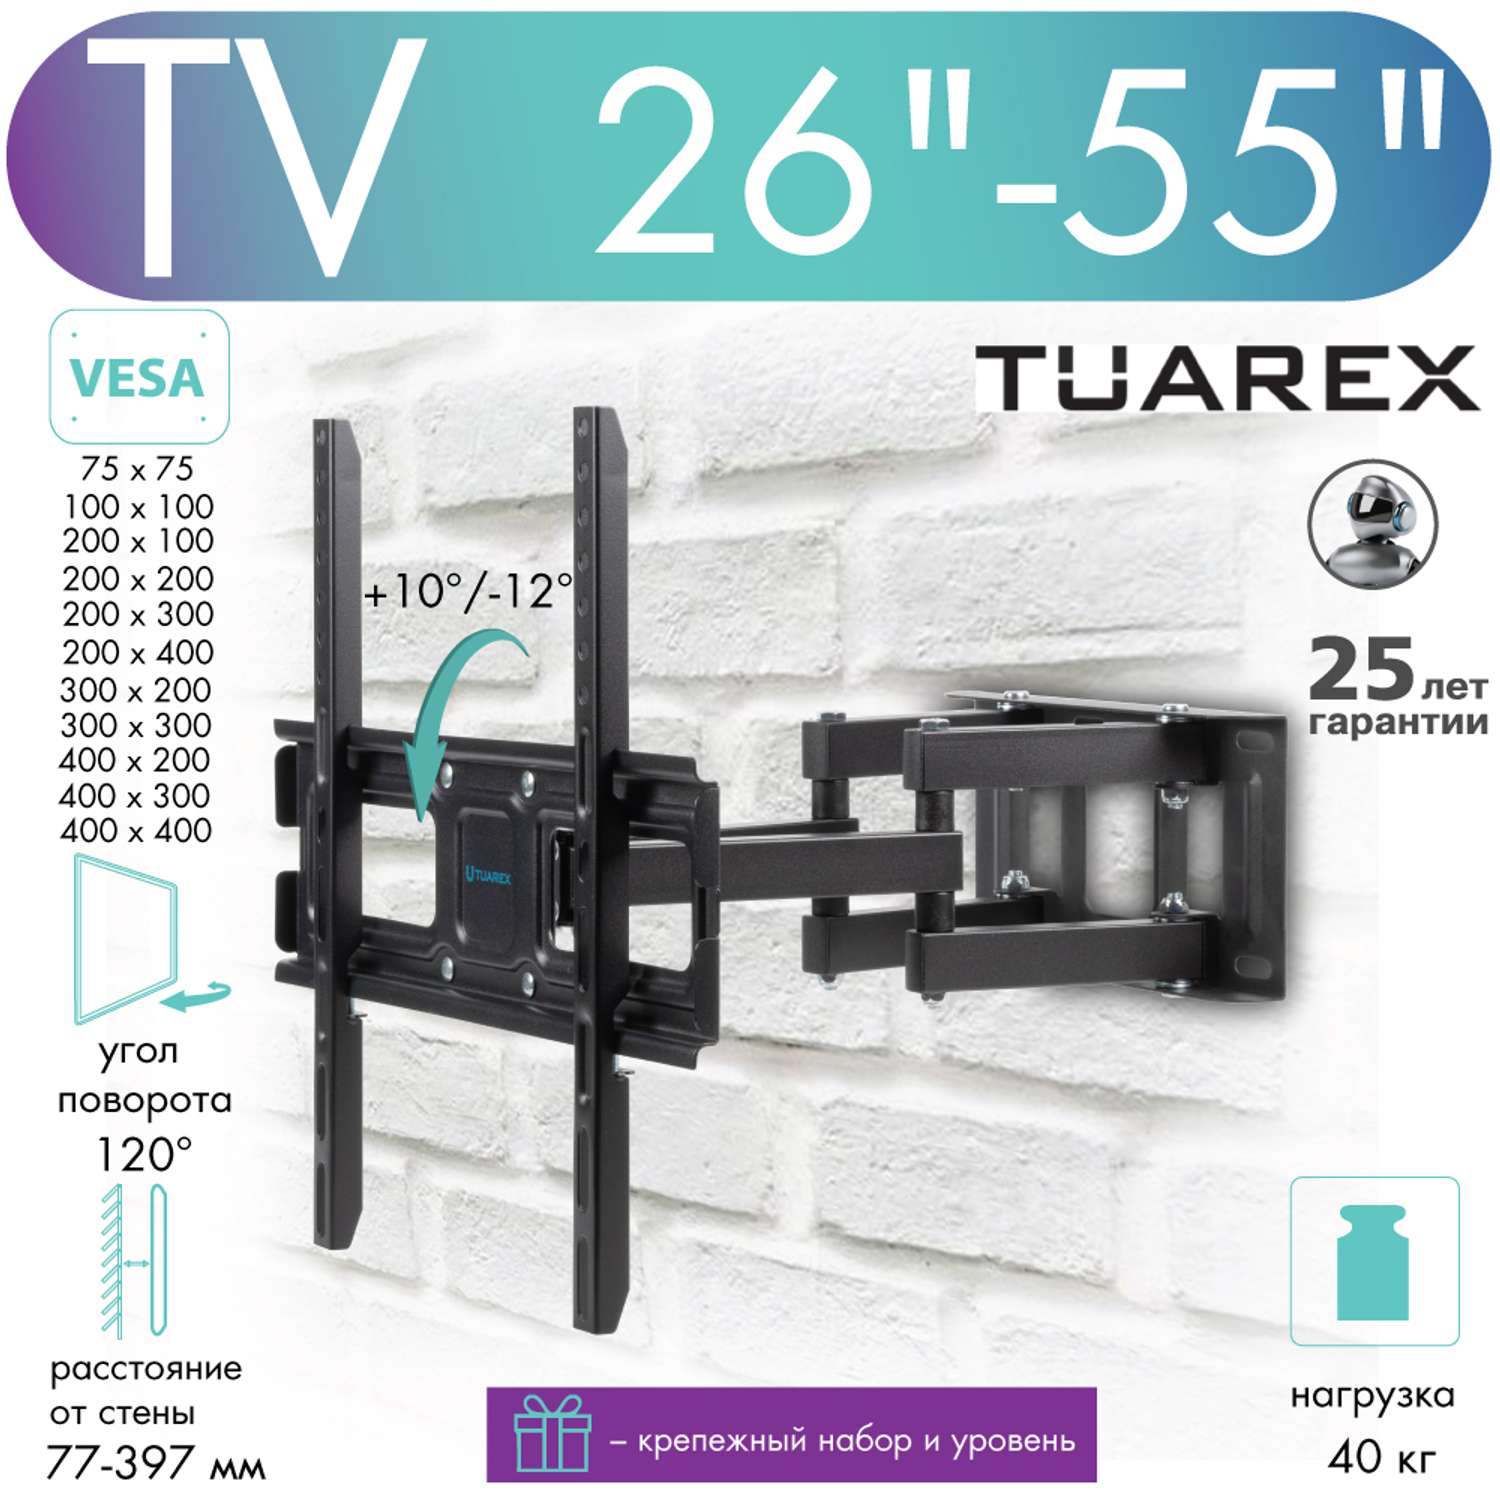 Кронштейн для телевизоров TUAREX OLIMP-406 - фото 2